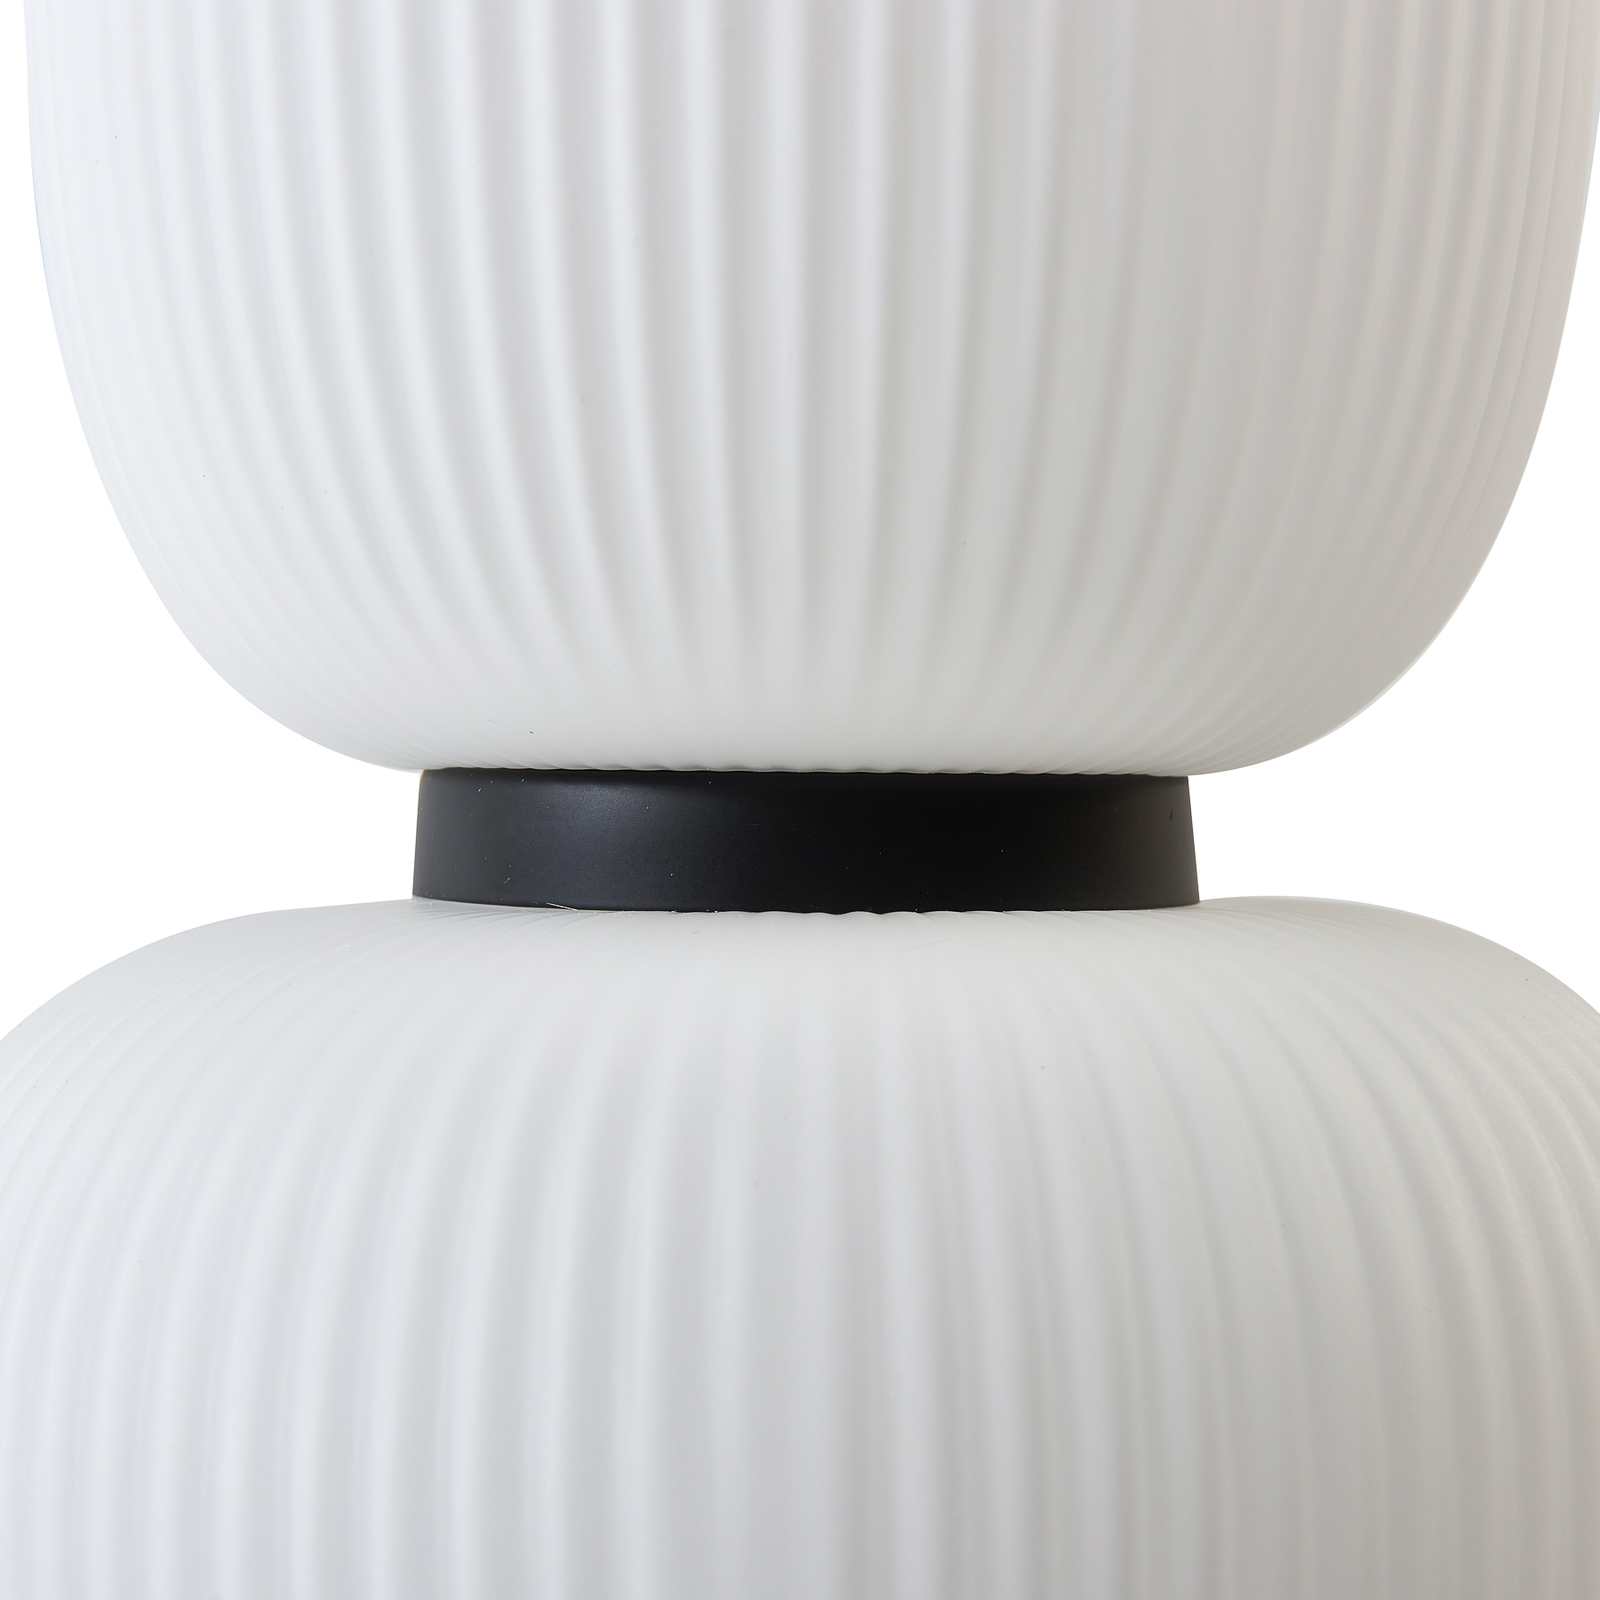 Lucande LED pendant light Lucya, 2-bulb, glass, white, 43 cm